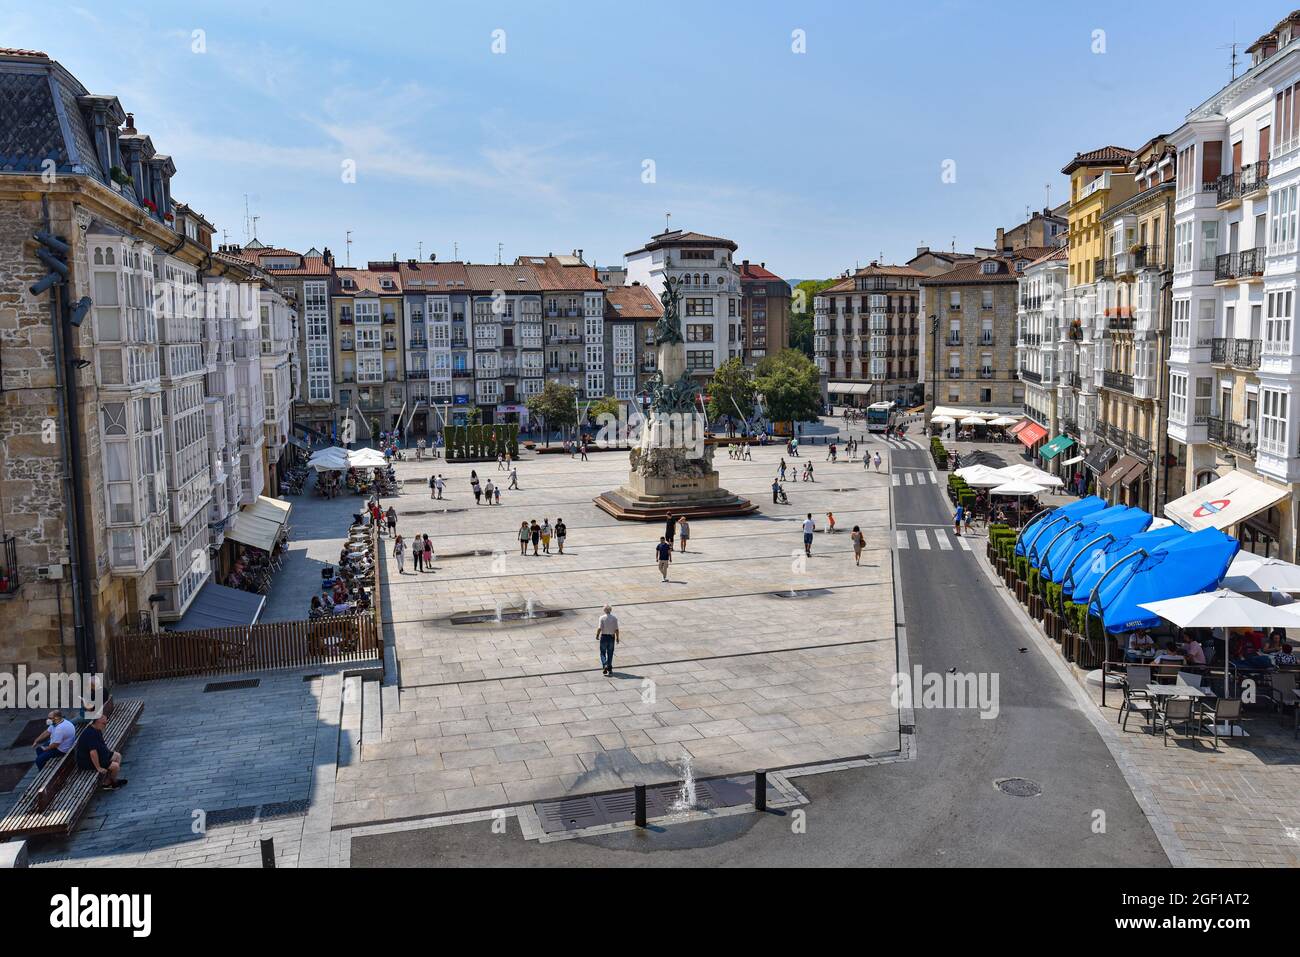 Vitoria-Gasteiz, Spagna - 20 agosto 2021: Monumento alla Battaglia di Vitoria e Plaza de la Virgen Blanca Foto Stock